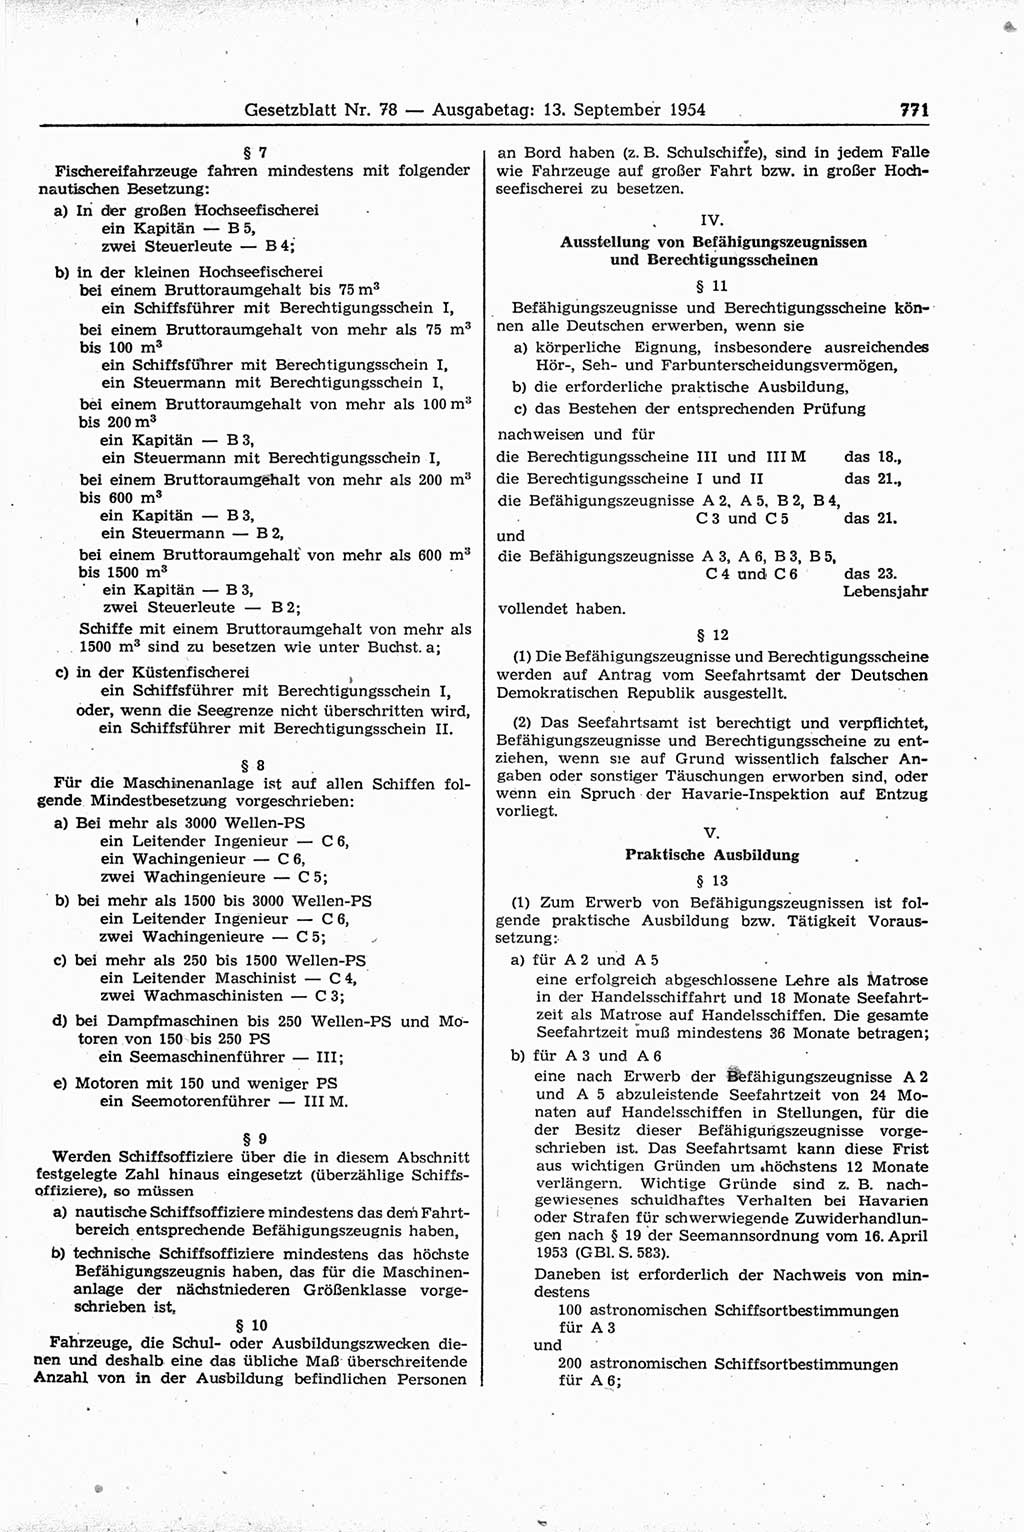 Gesetzblatt (GBl.) der Deutschen Demokratischen Republik (DDR) 1954, Seite 771 (GBl. DDR 1954, S. 771)